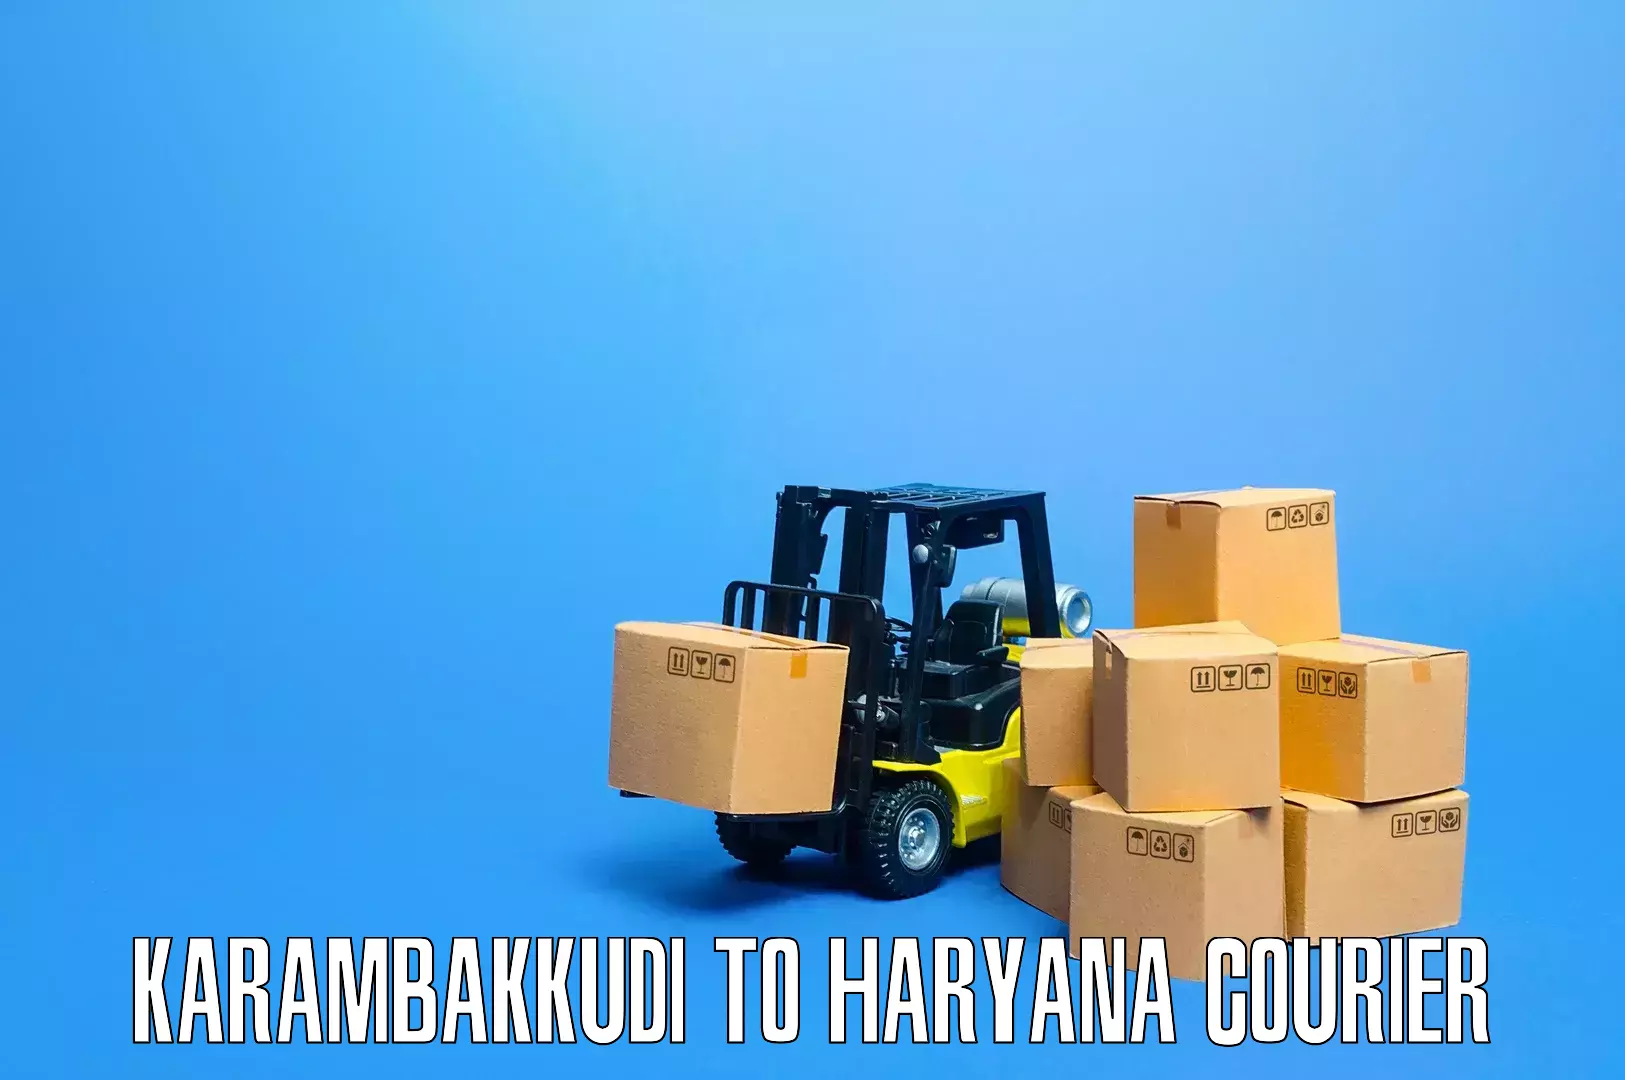 Expert home movers Karambakkudi to Haryana